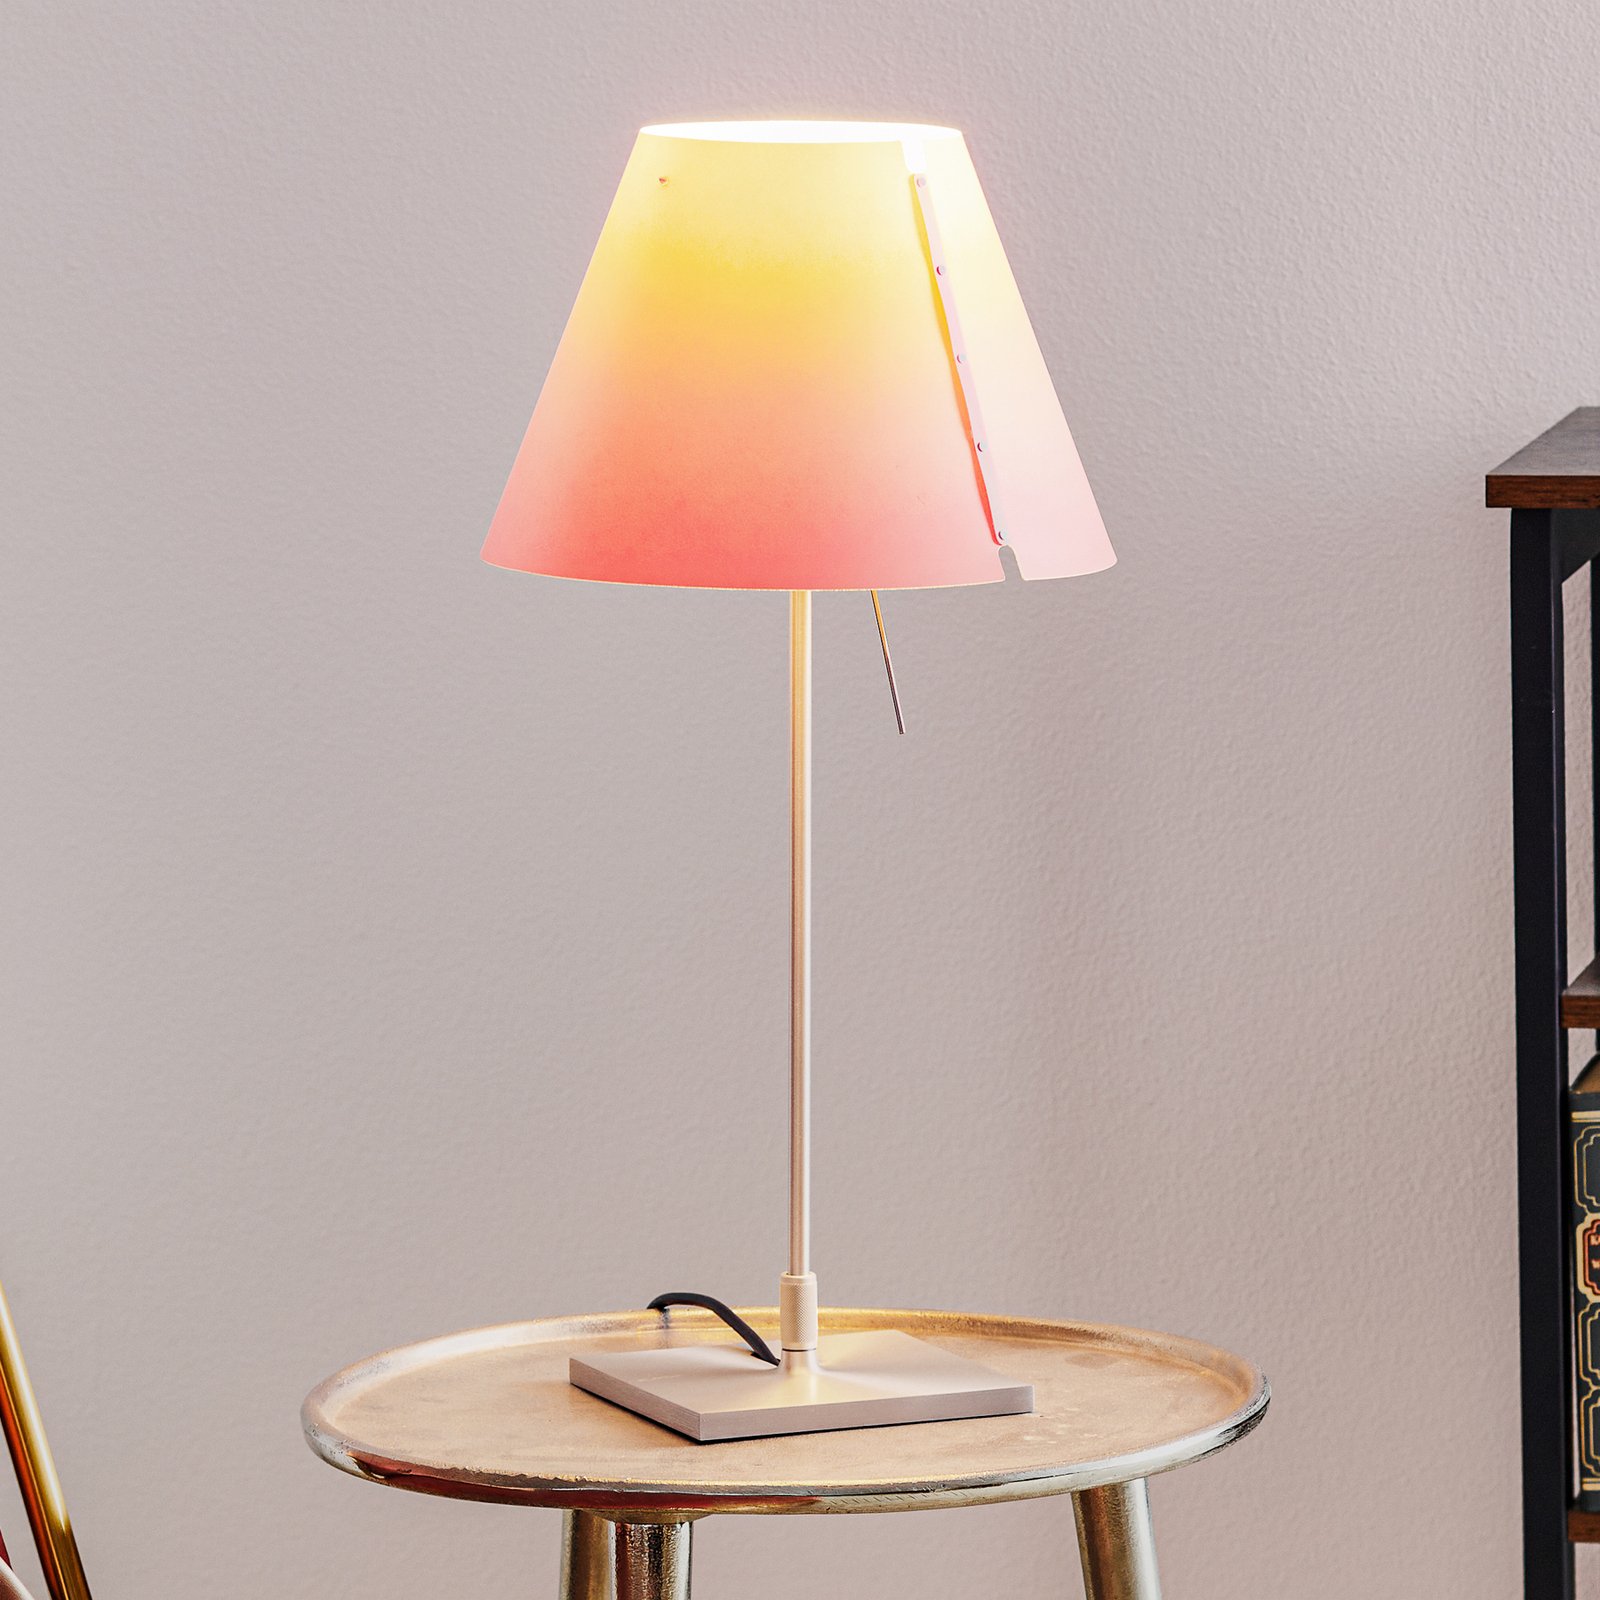 Luceplan Costanzina stolní lampa hliník, růžová